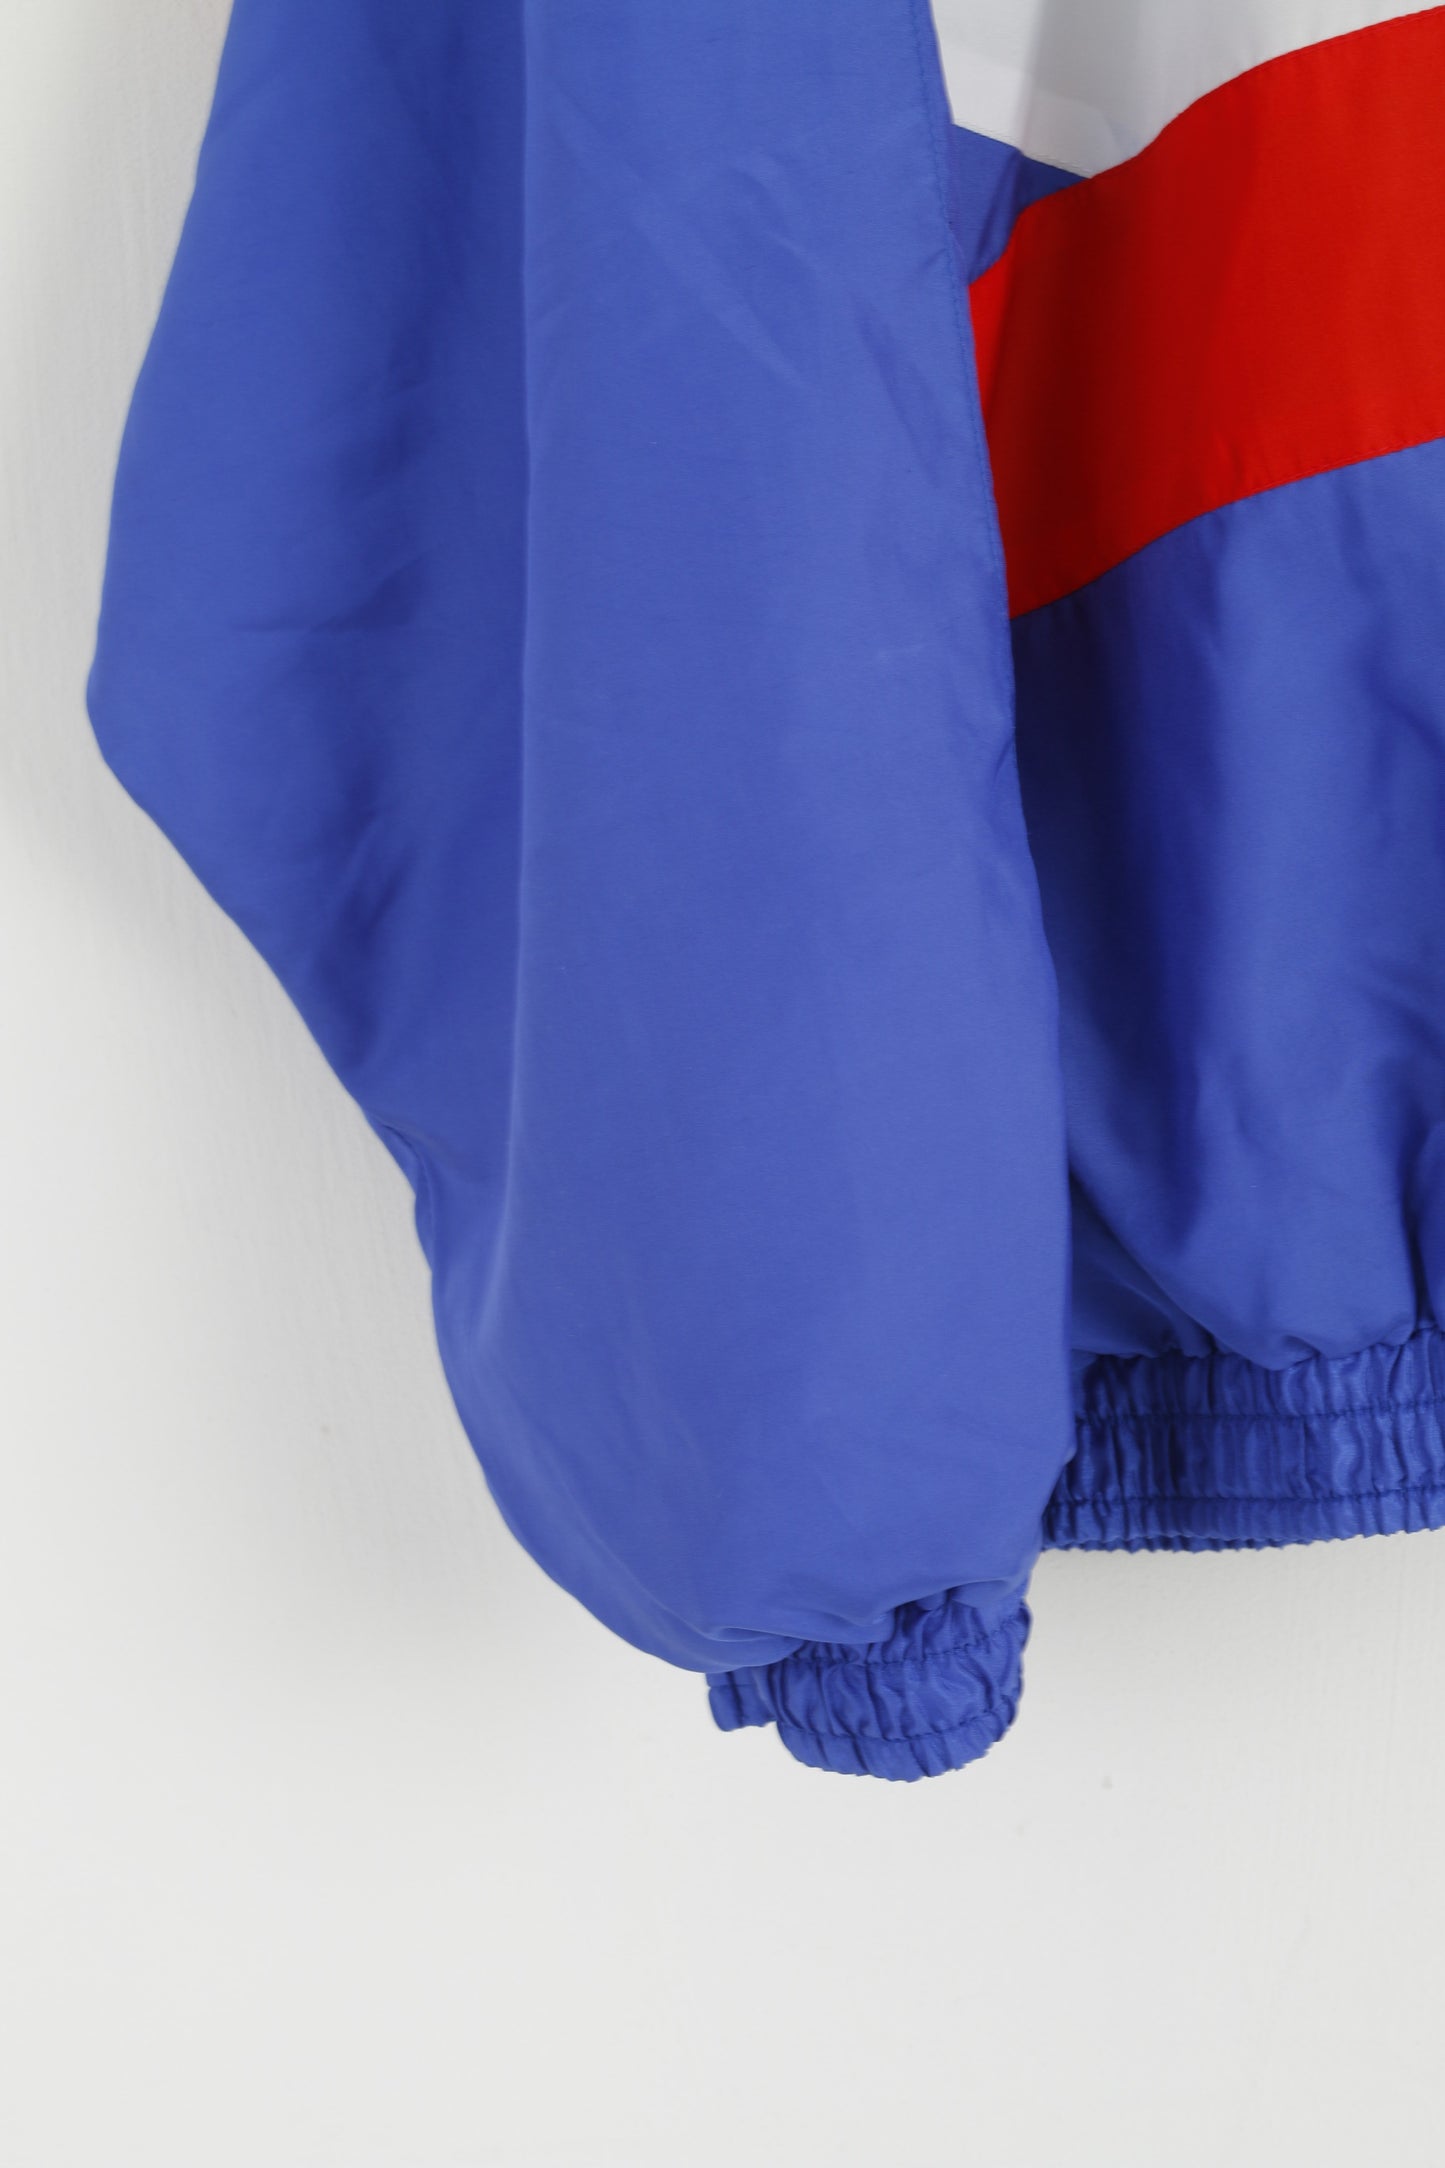 Vintage Hommes L Bomber Veste Bleu Brillant Pleine Fermeture Éclair Oldschool Sportswear Top